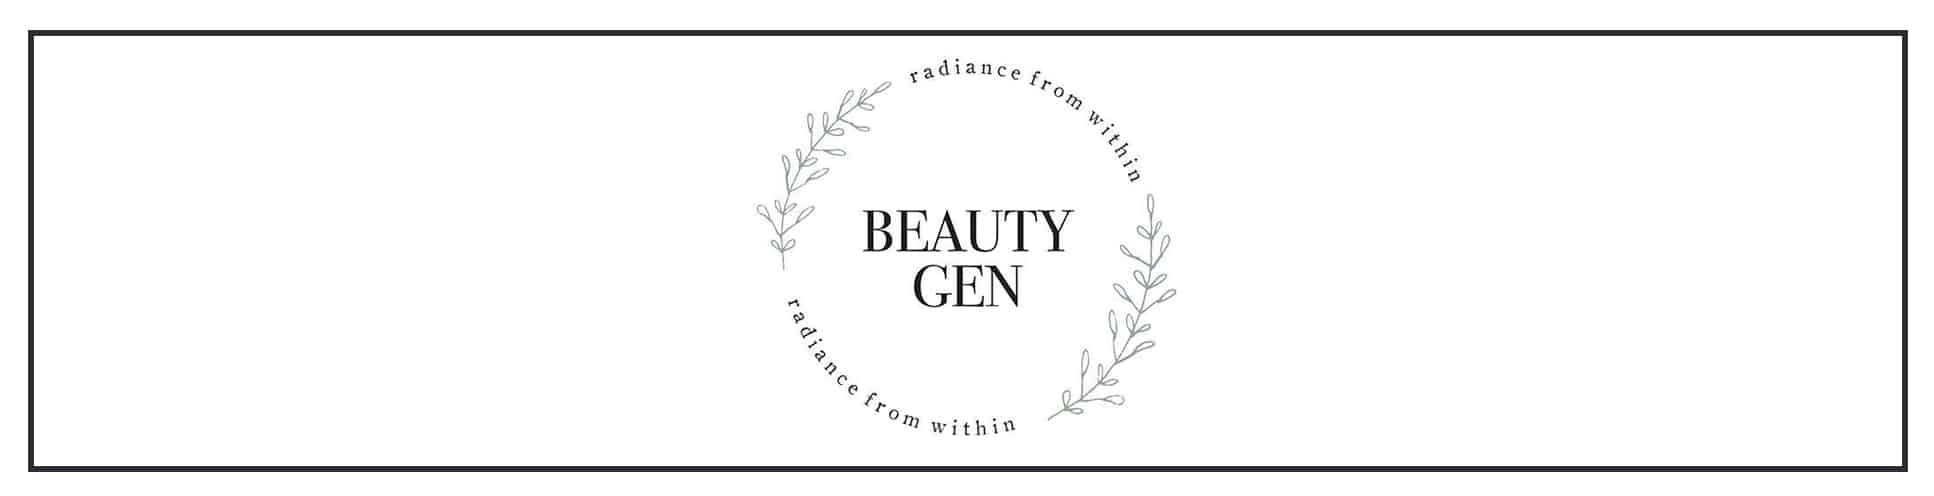 Beauty gen logo.